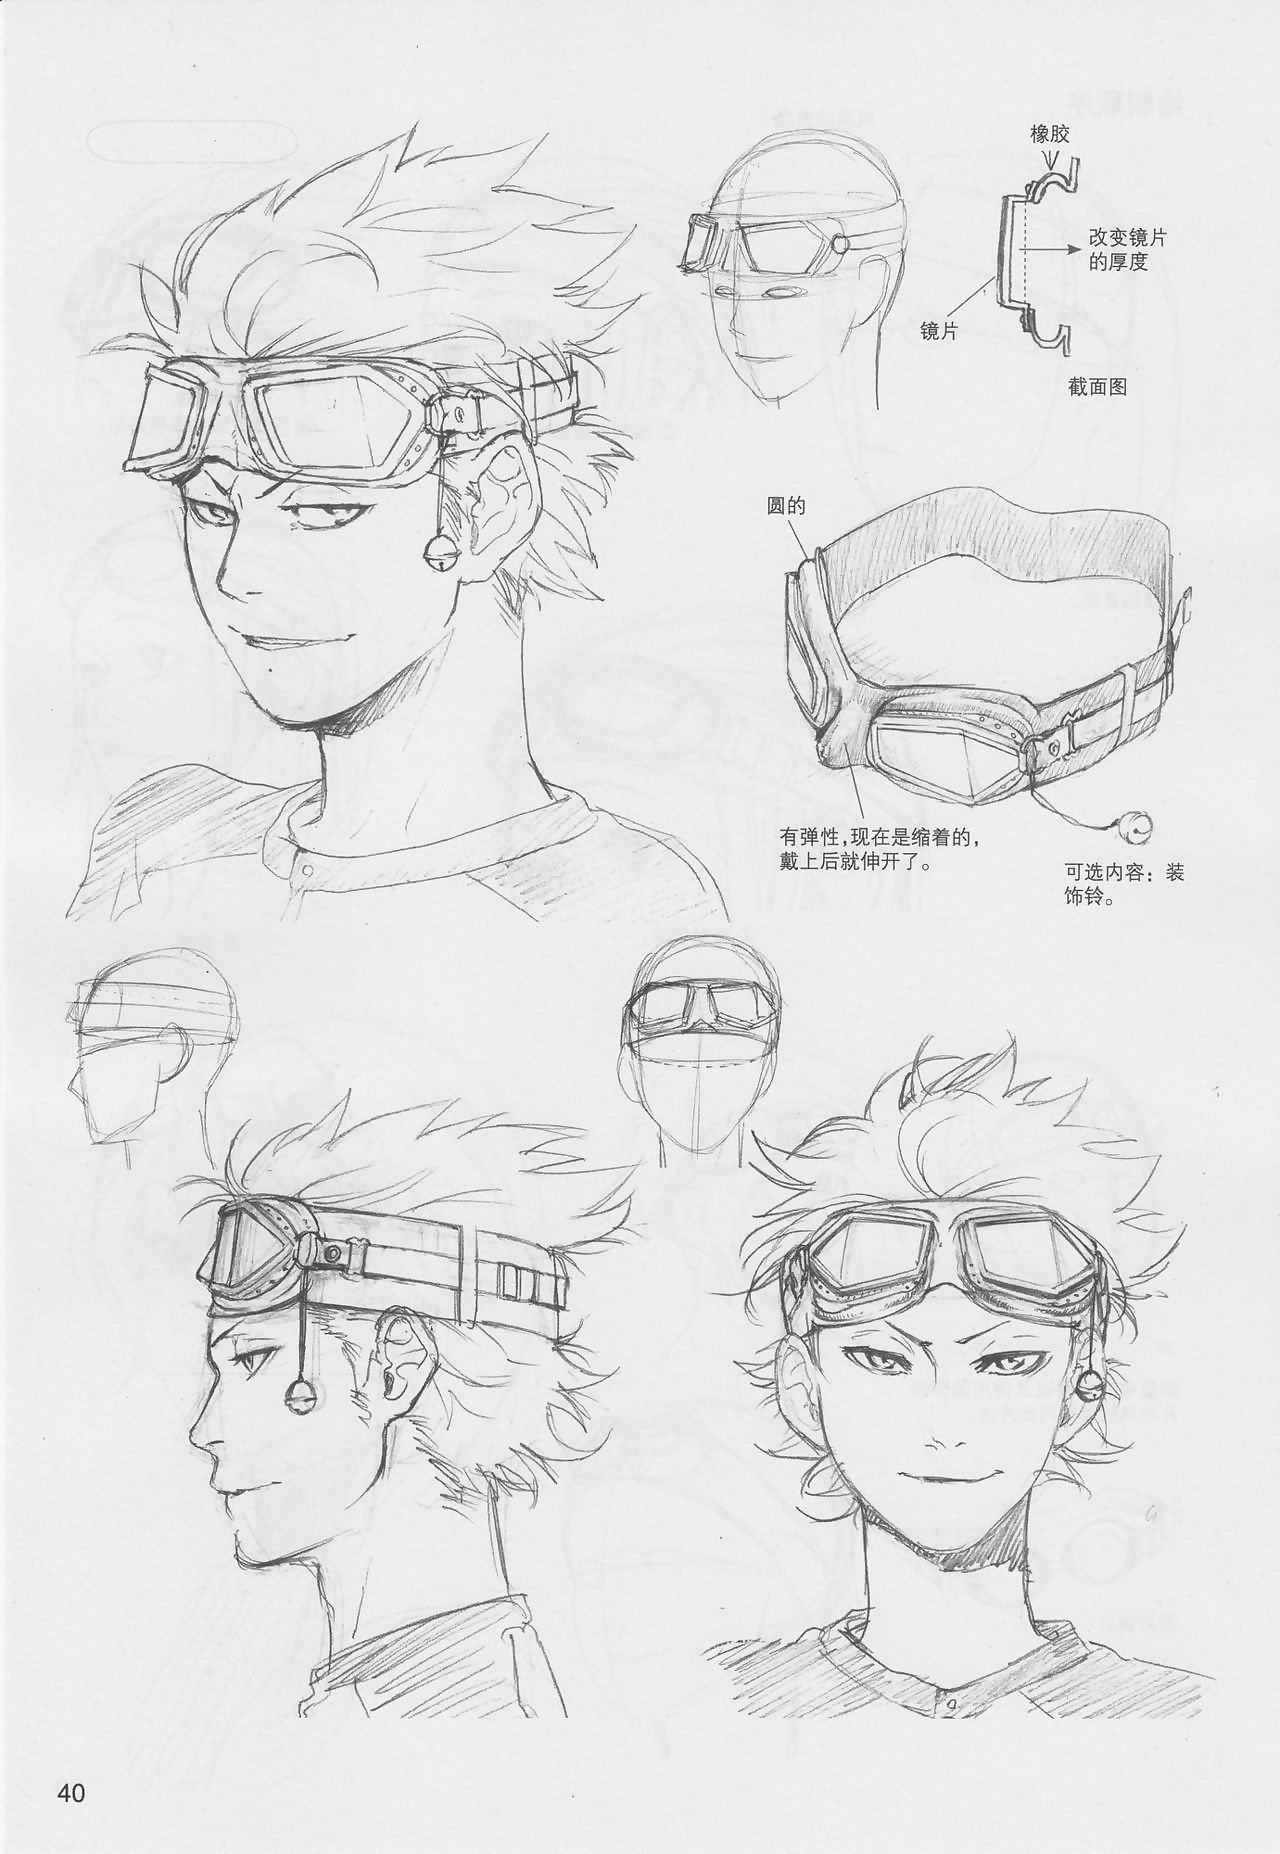 How To Draw Manga: Sketching Manga-Style Volume 5: Sketching Props - part 3